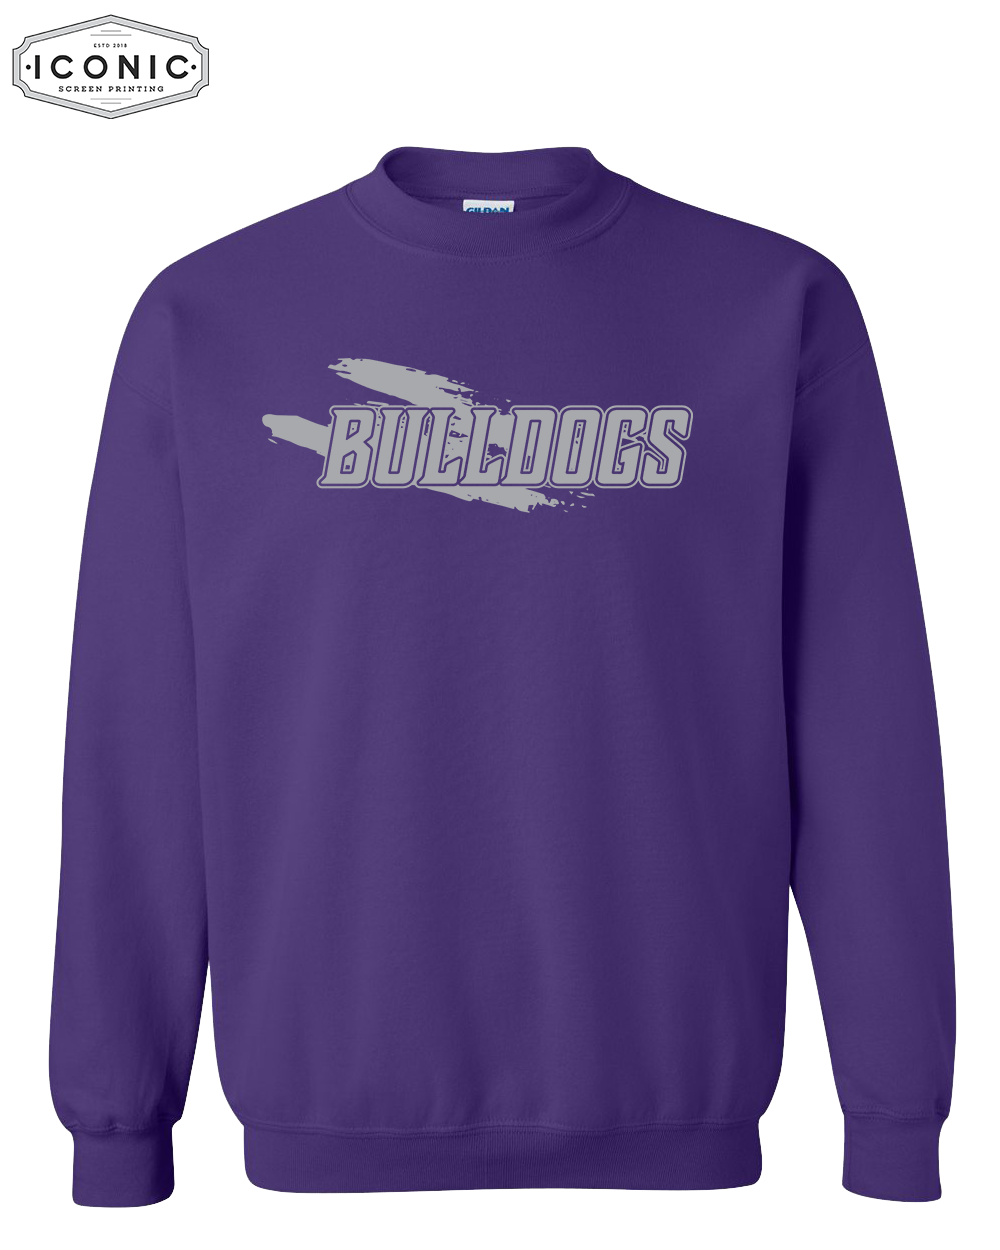 BULLDOGS - Heavy Blend Sweatshirt